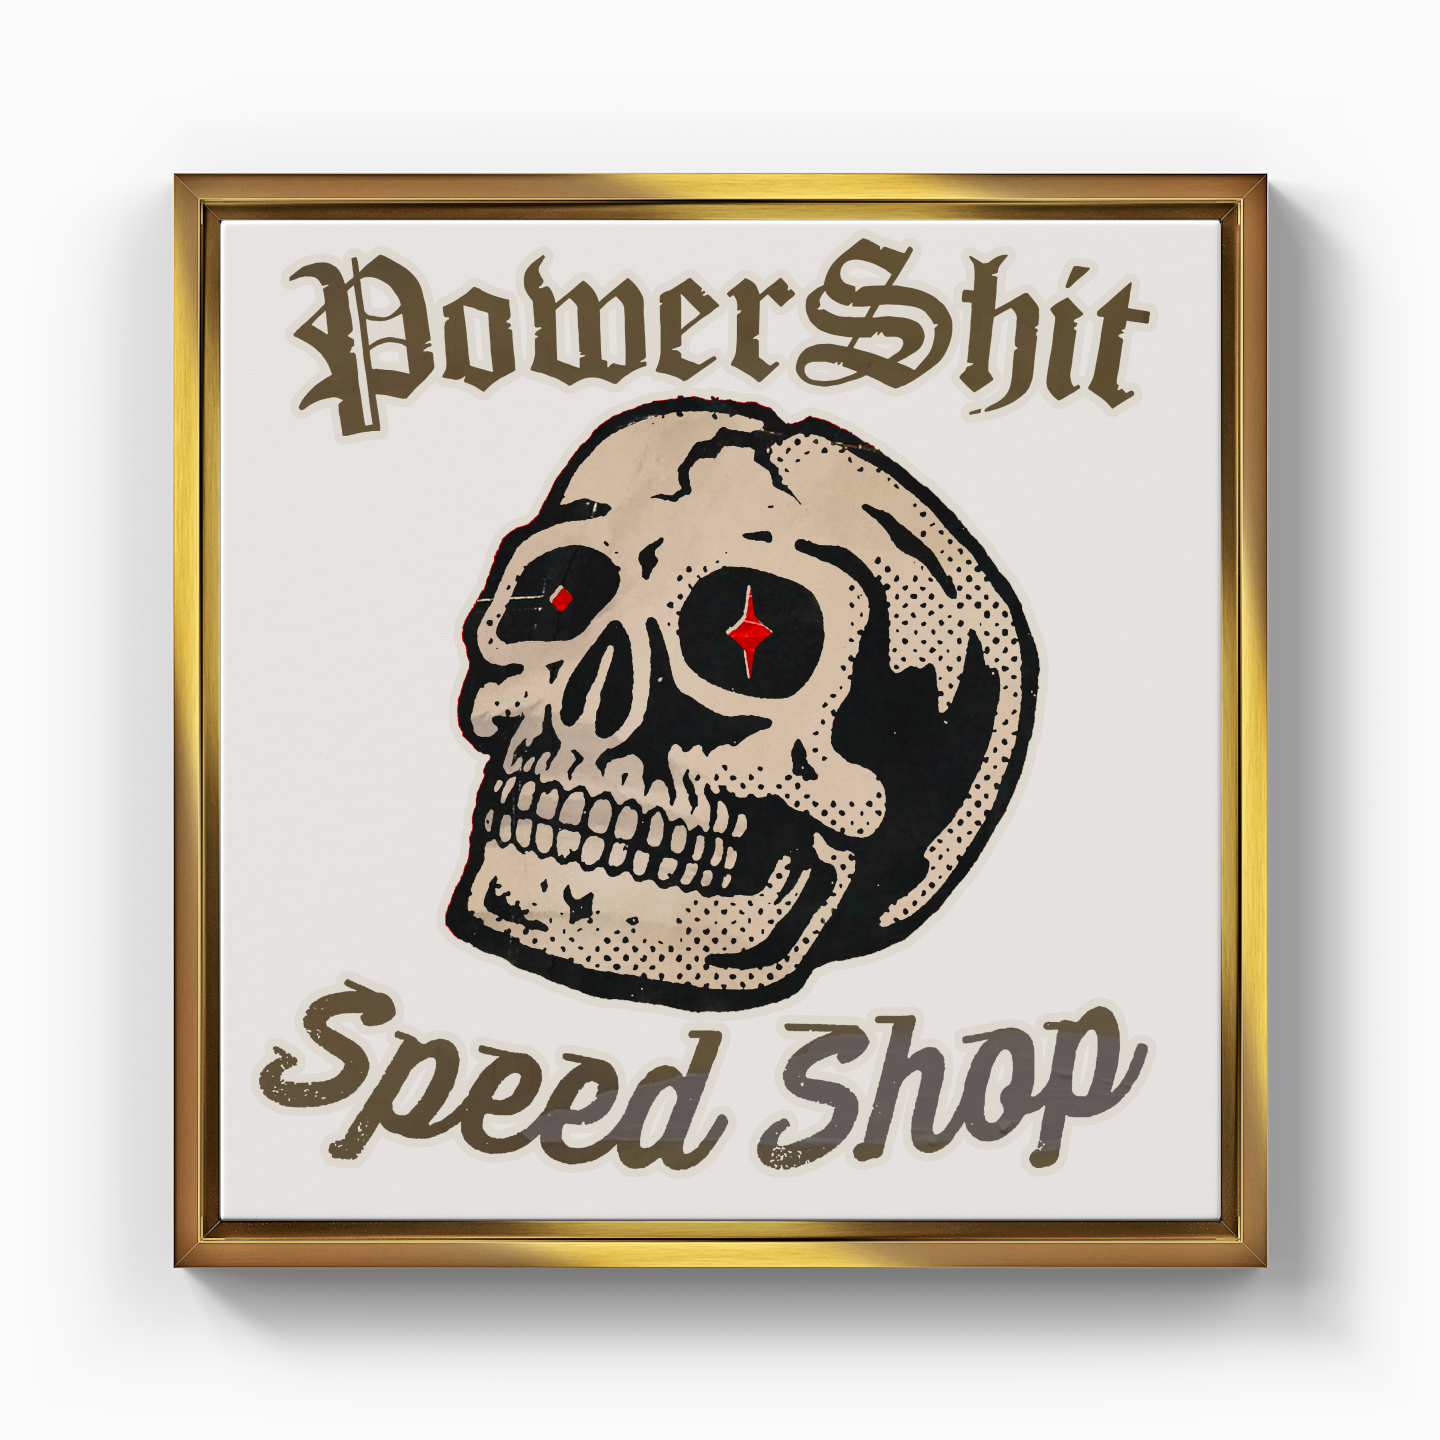 Power Shit Speed Shop - Kanvas Tablo